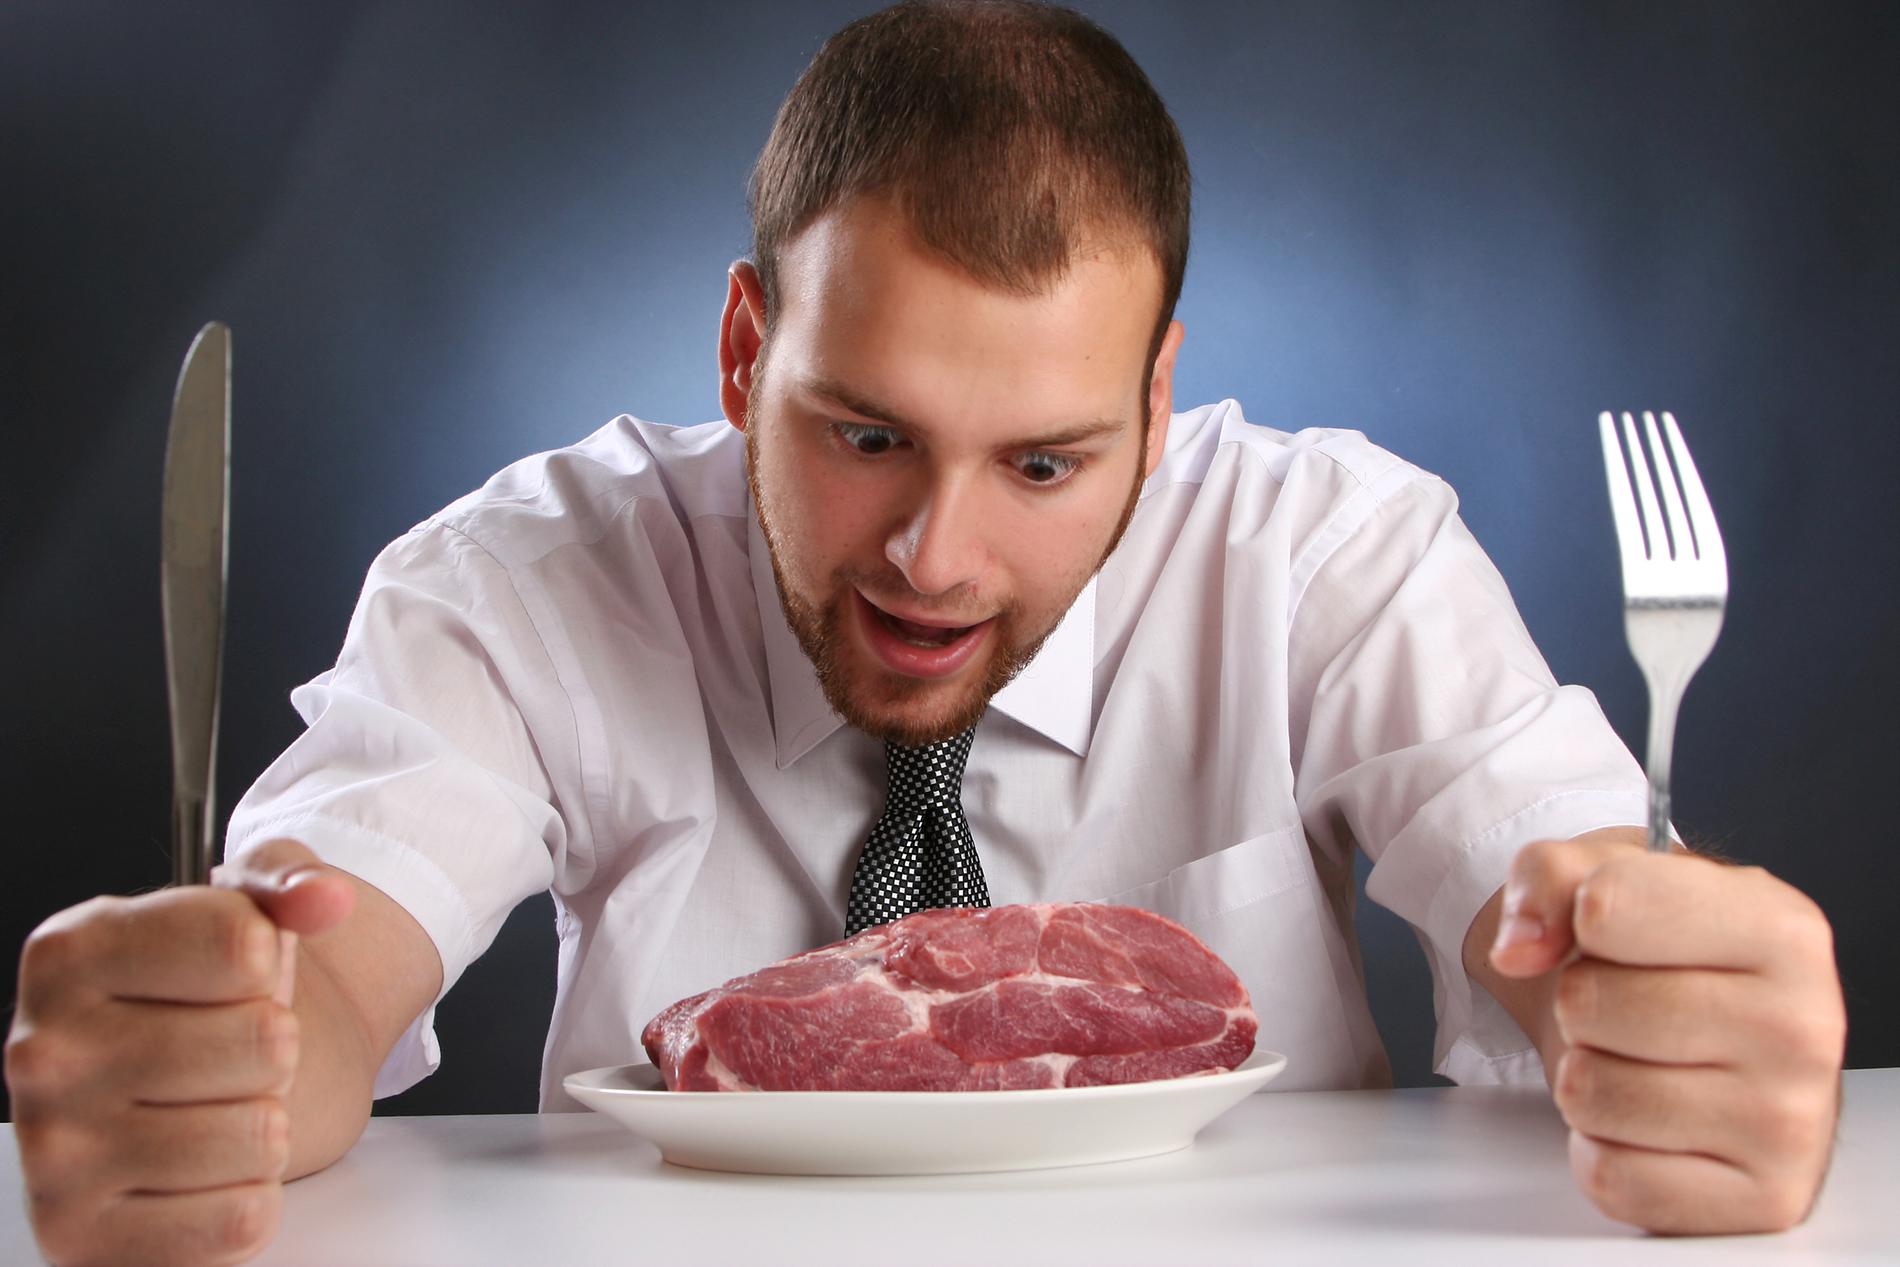 RØDT KJØTT: Det er ingen grunn til å hoppe på trenden med å kutte ut rødt kjøtt, mener ernæringsprofessor.